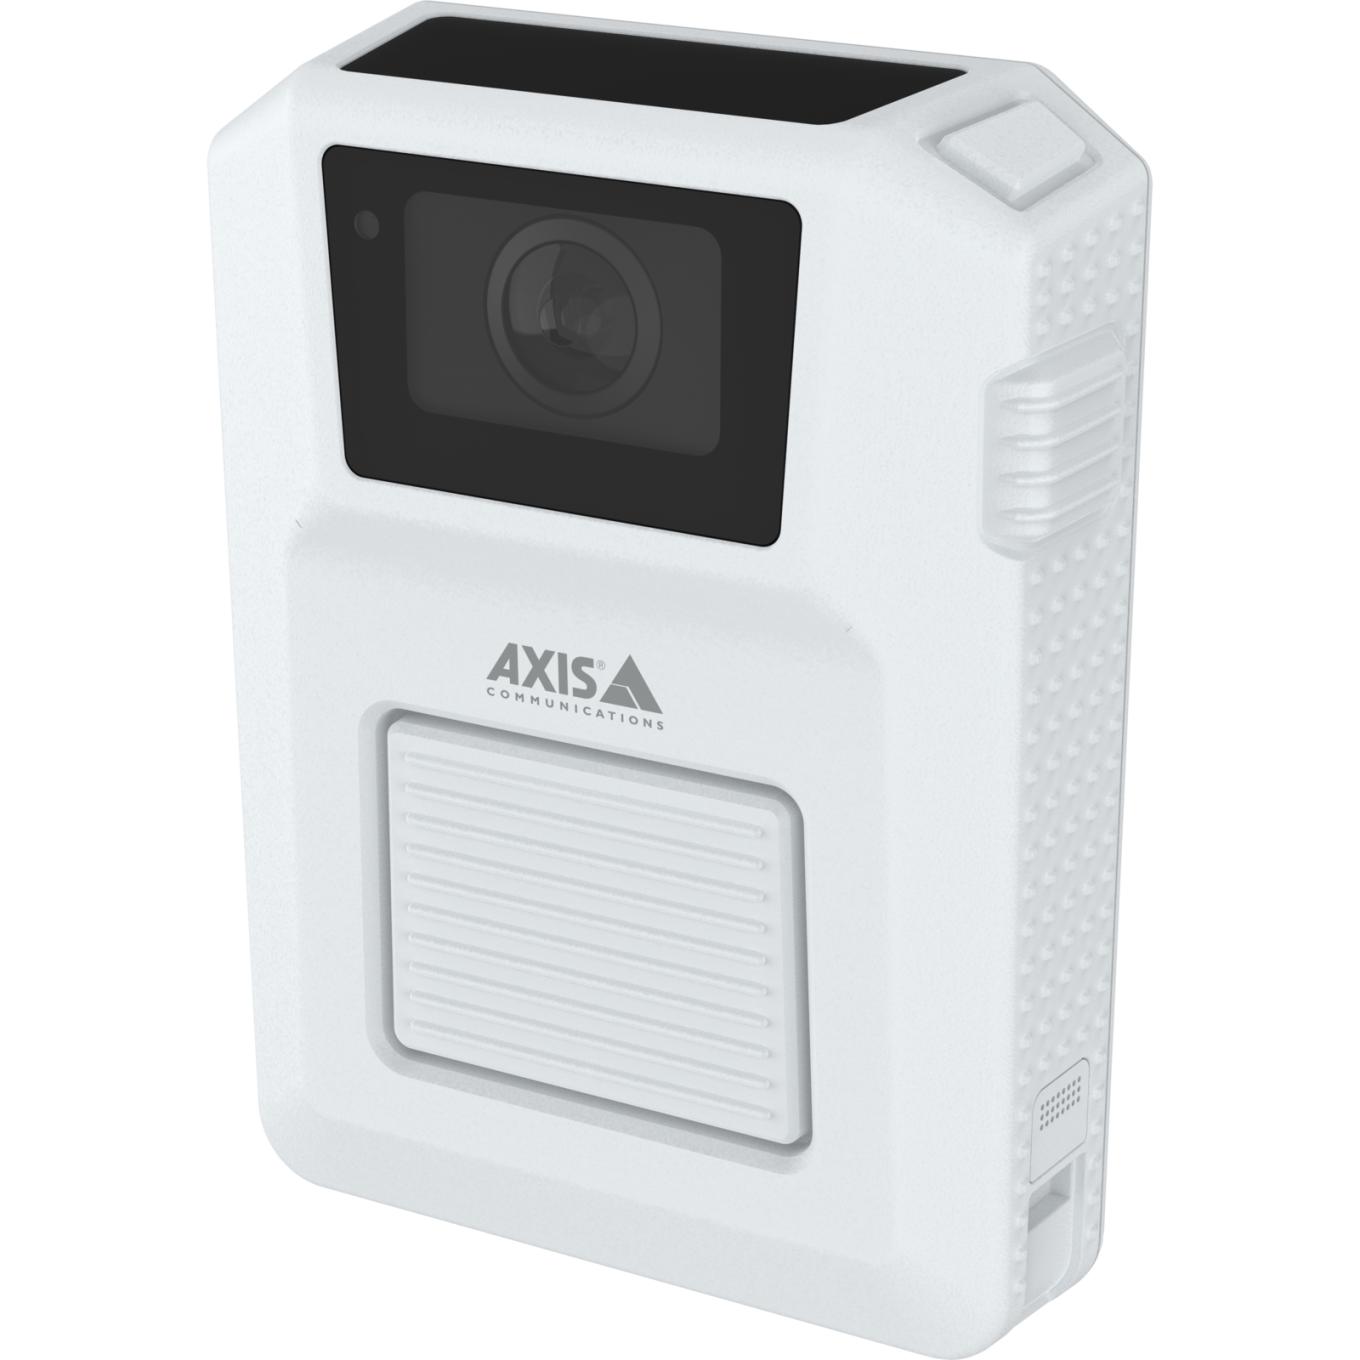 AXIS W102 Body Worn Camera blanca, lado izquierdo